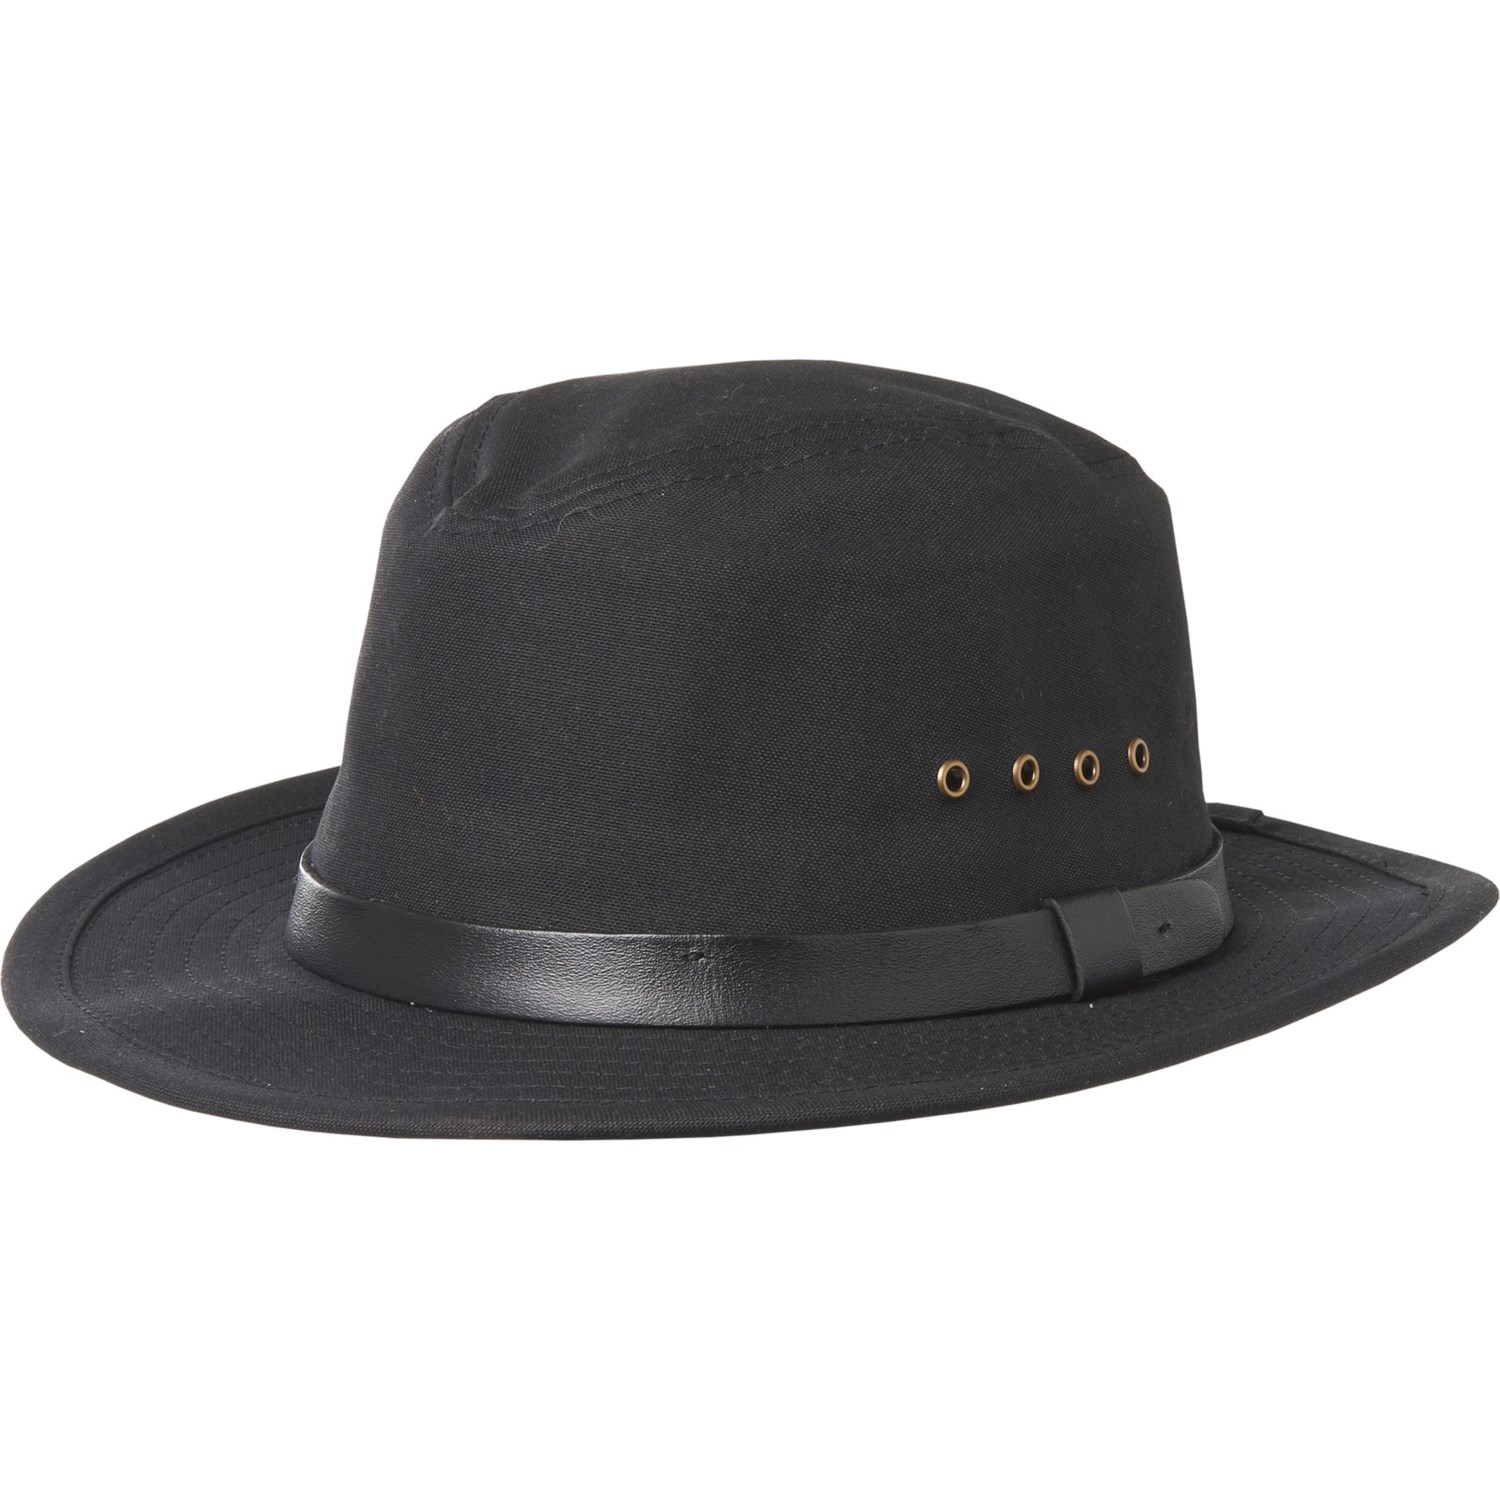 Filson Tin Packer Hat (For Men) - Save 52%